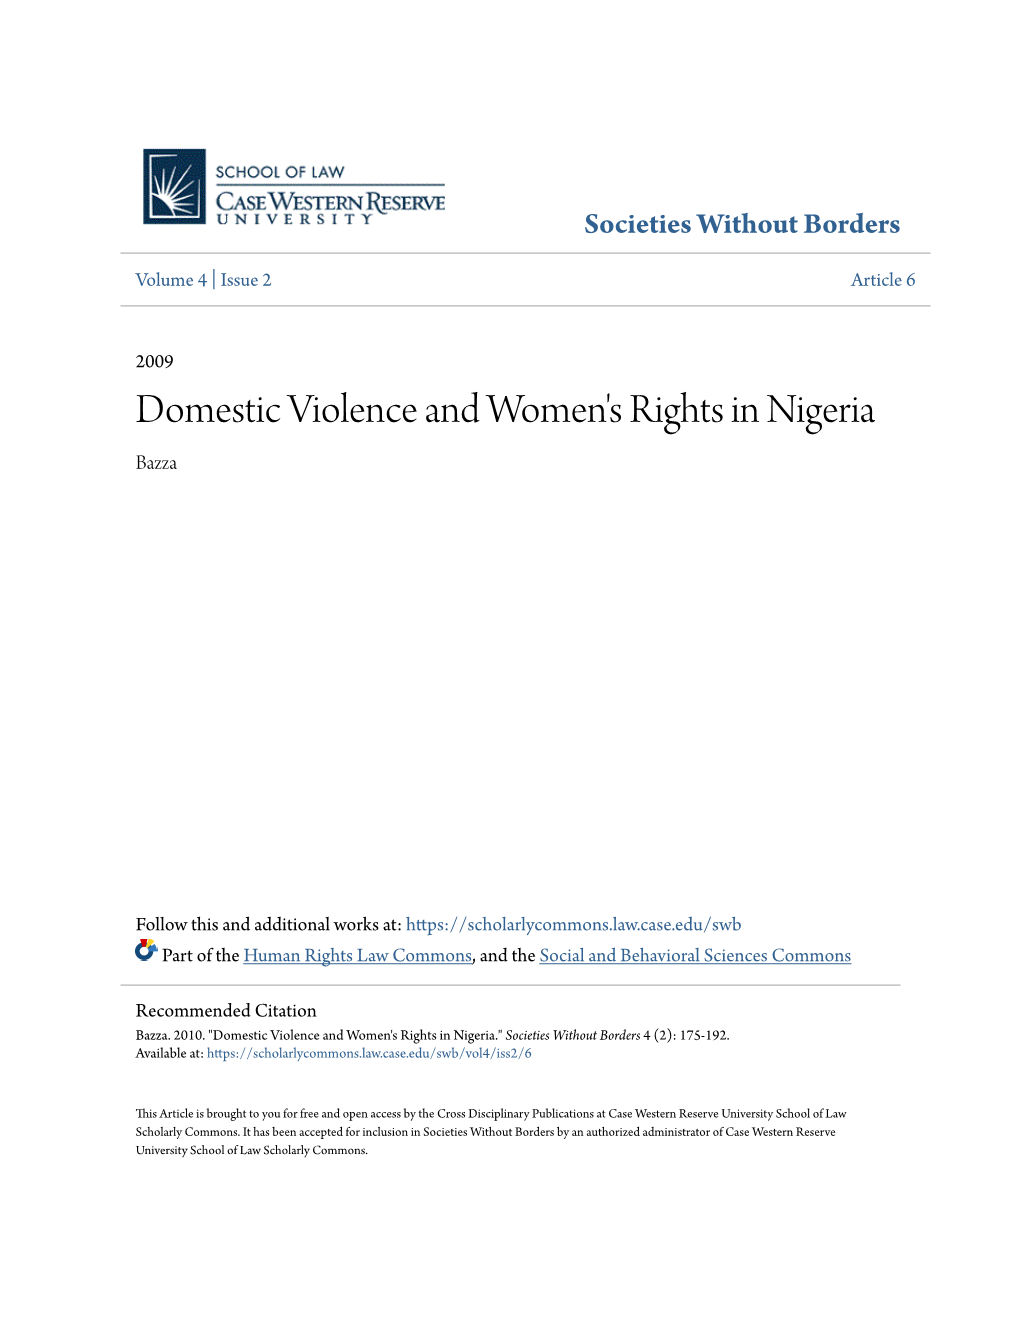 Domestic Violence and Women's Rights in Nigeria Bazza